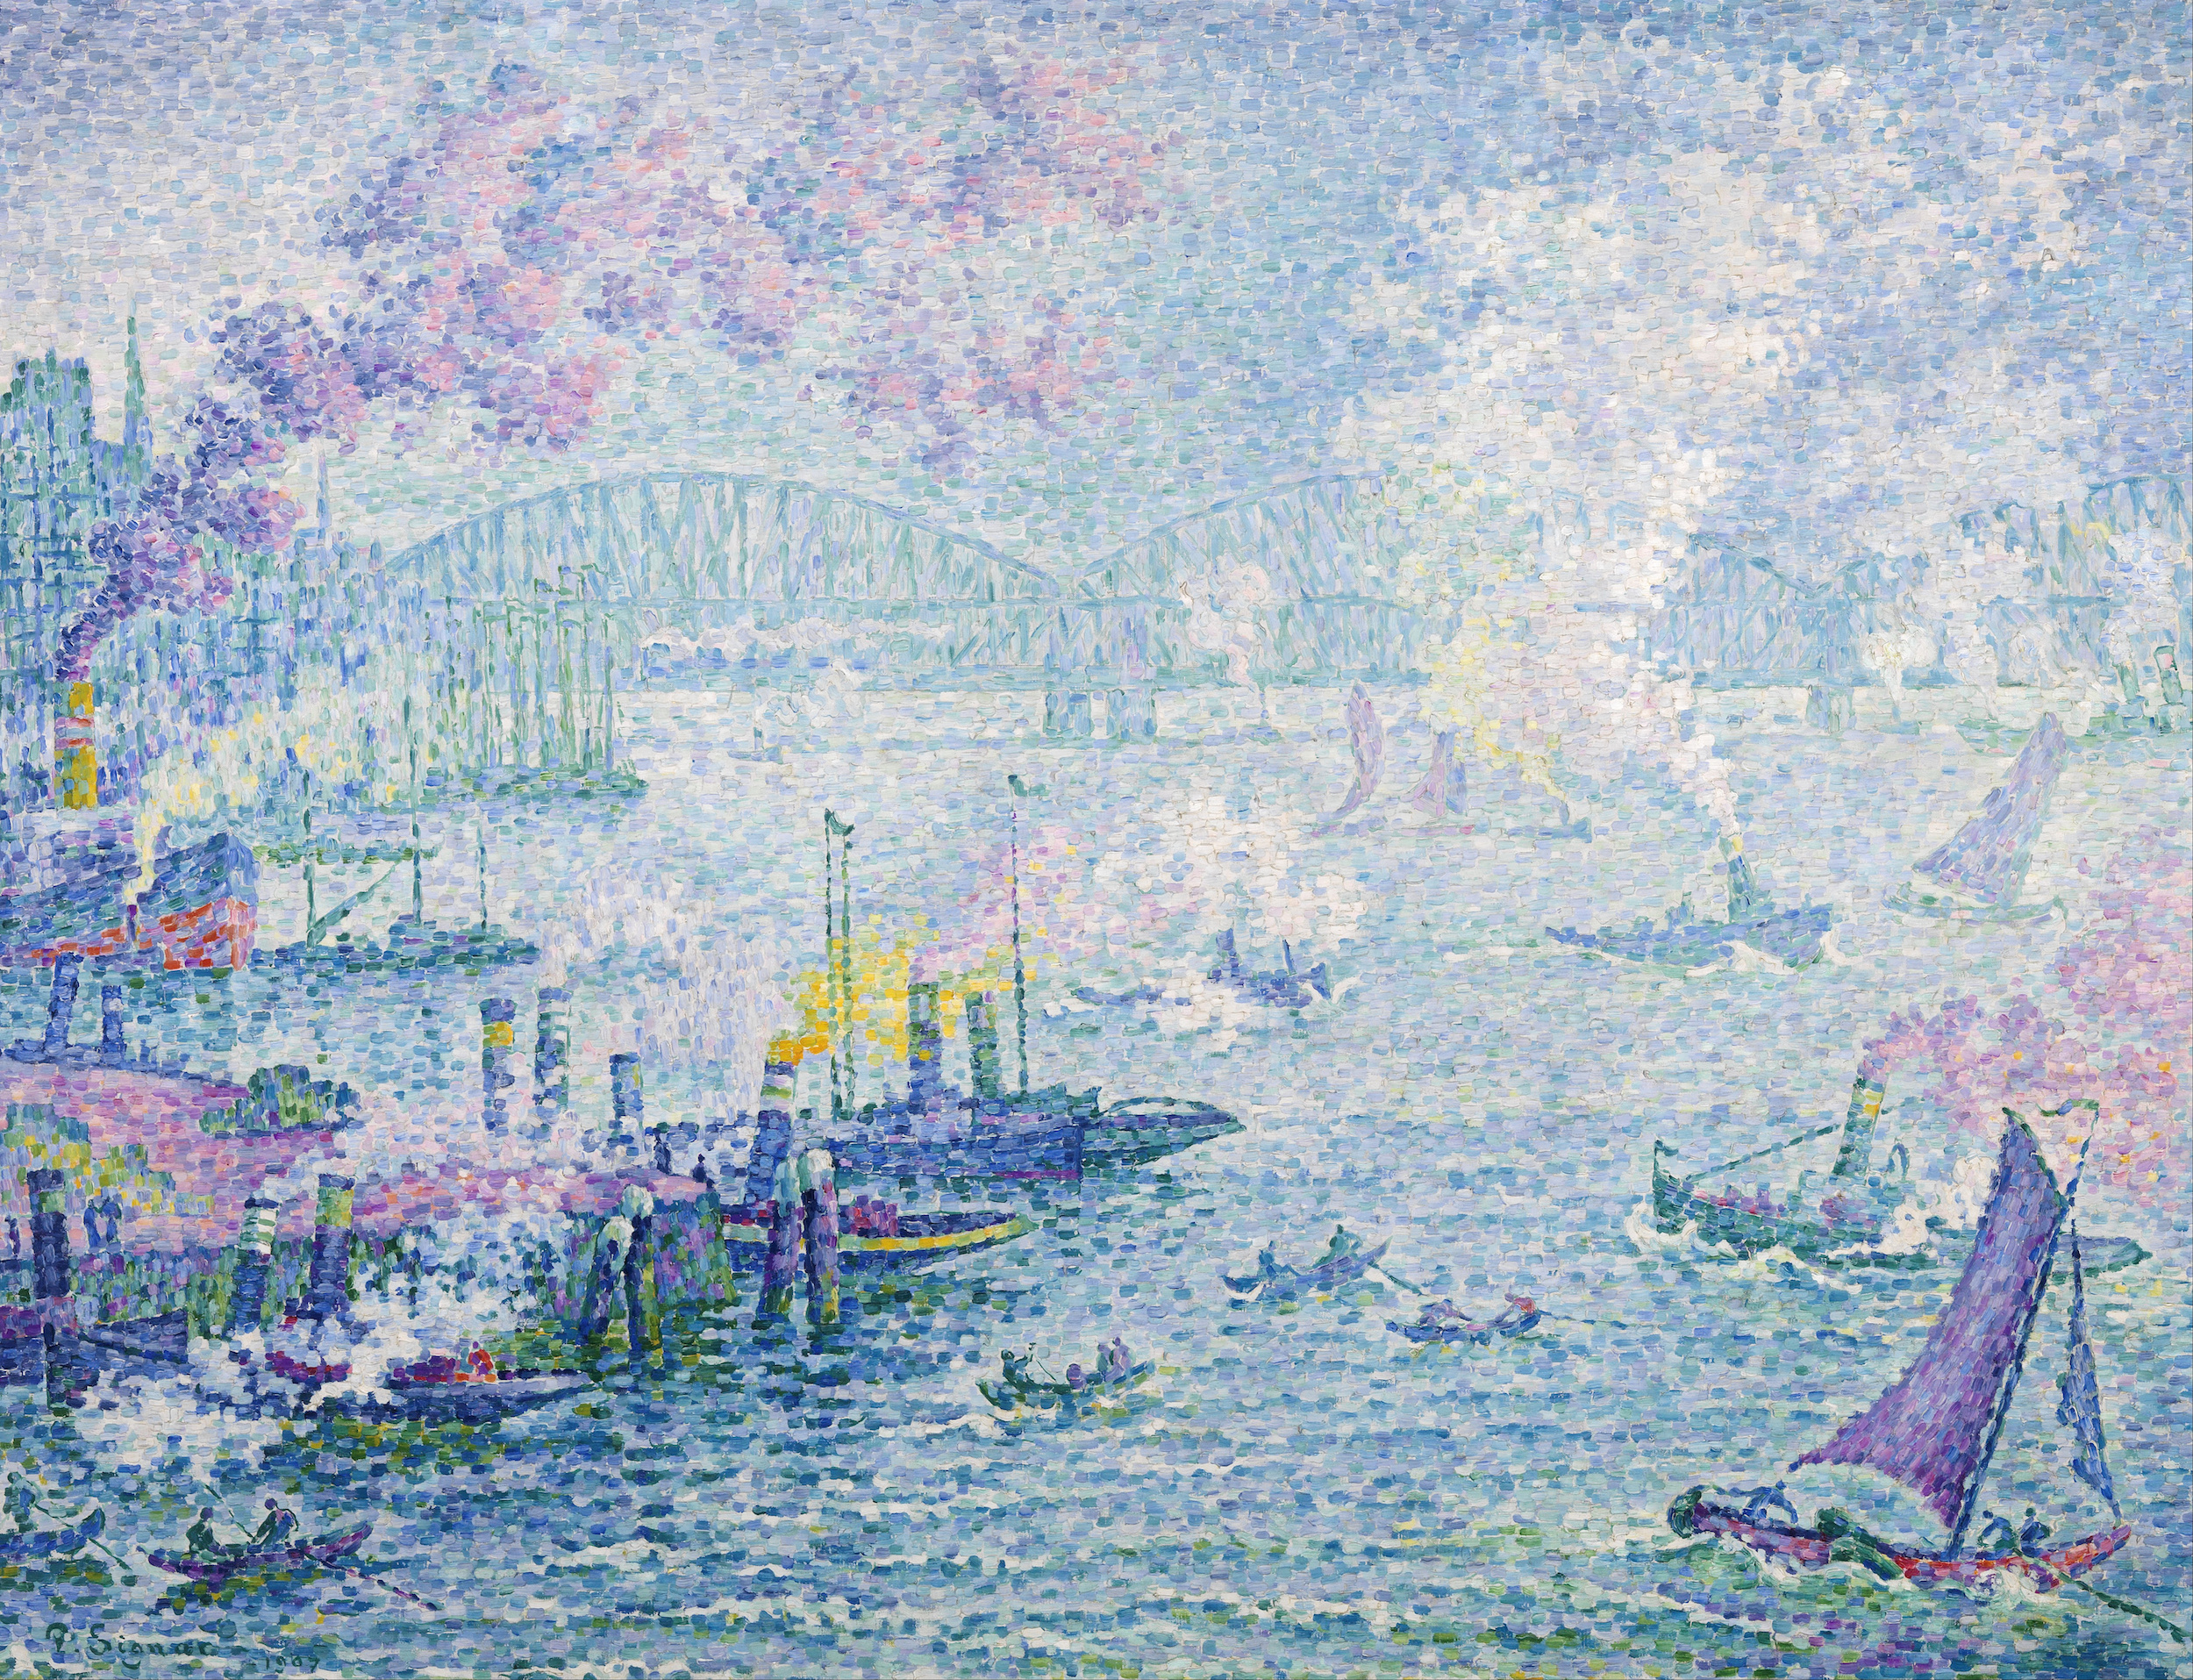 Der Hafen von Rotterdam by Paul Signac - 1907 - 114 x 87 cm Museum Boijmans Van Beuningen